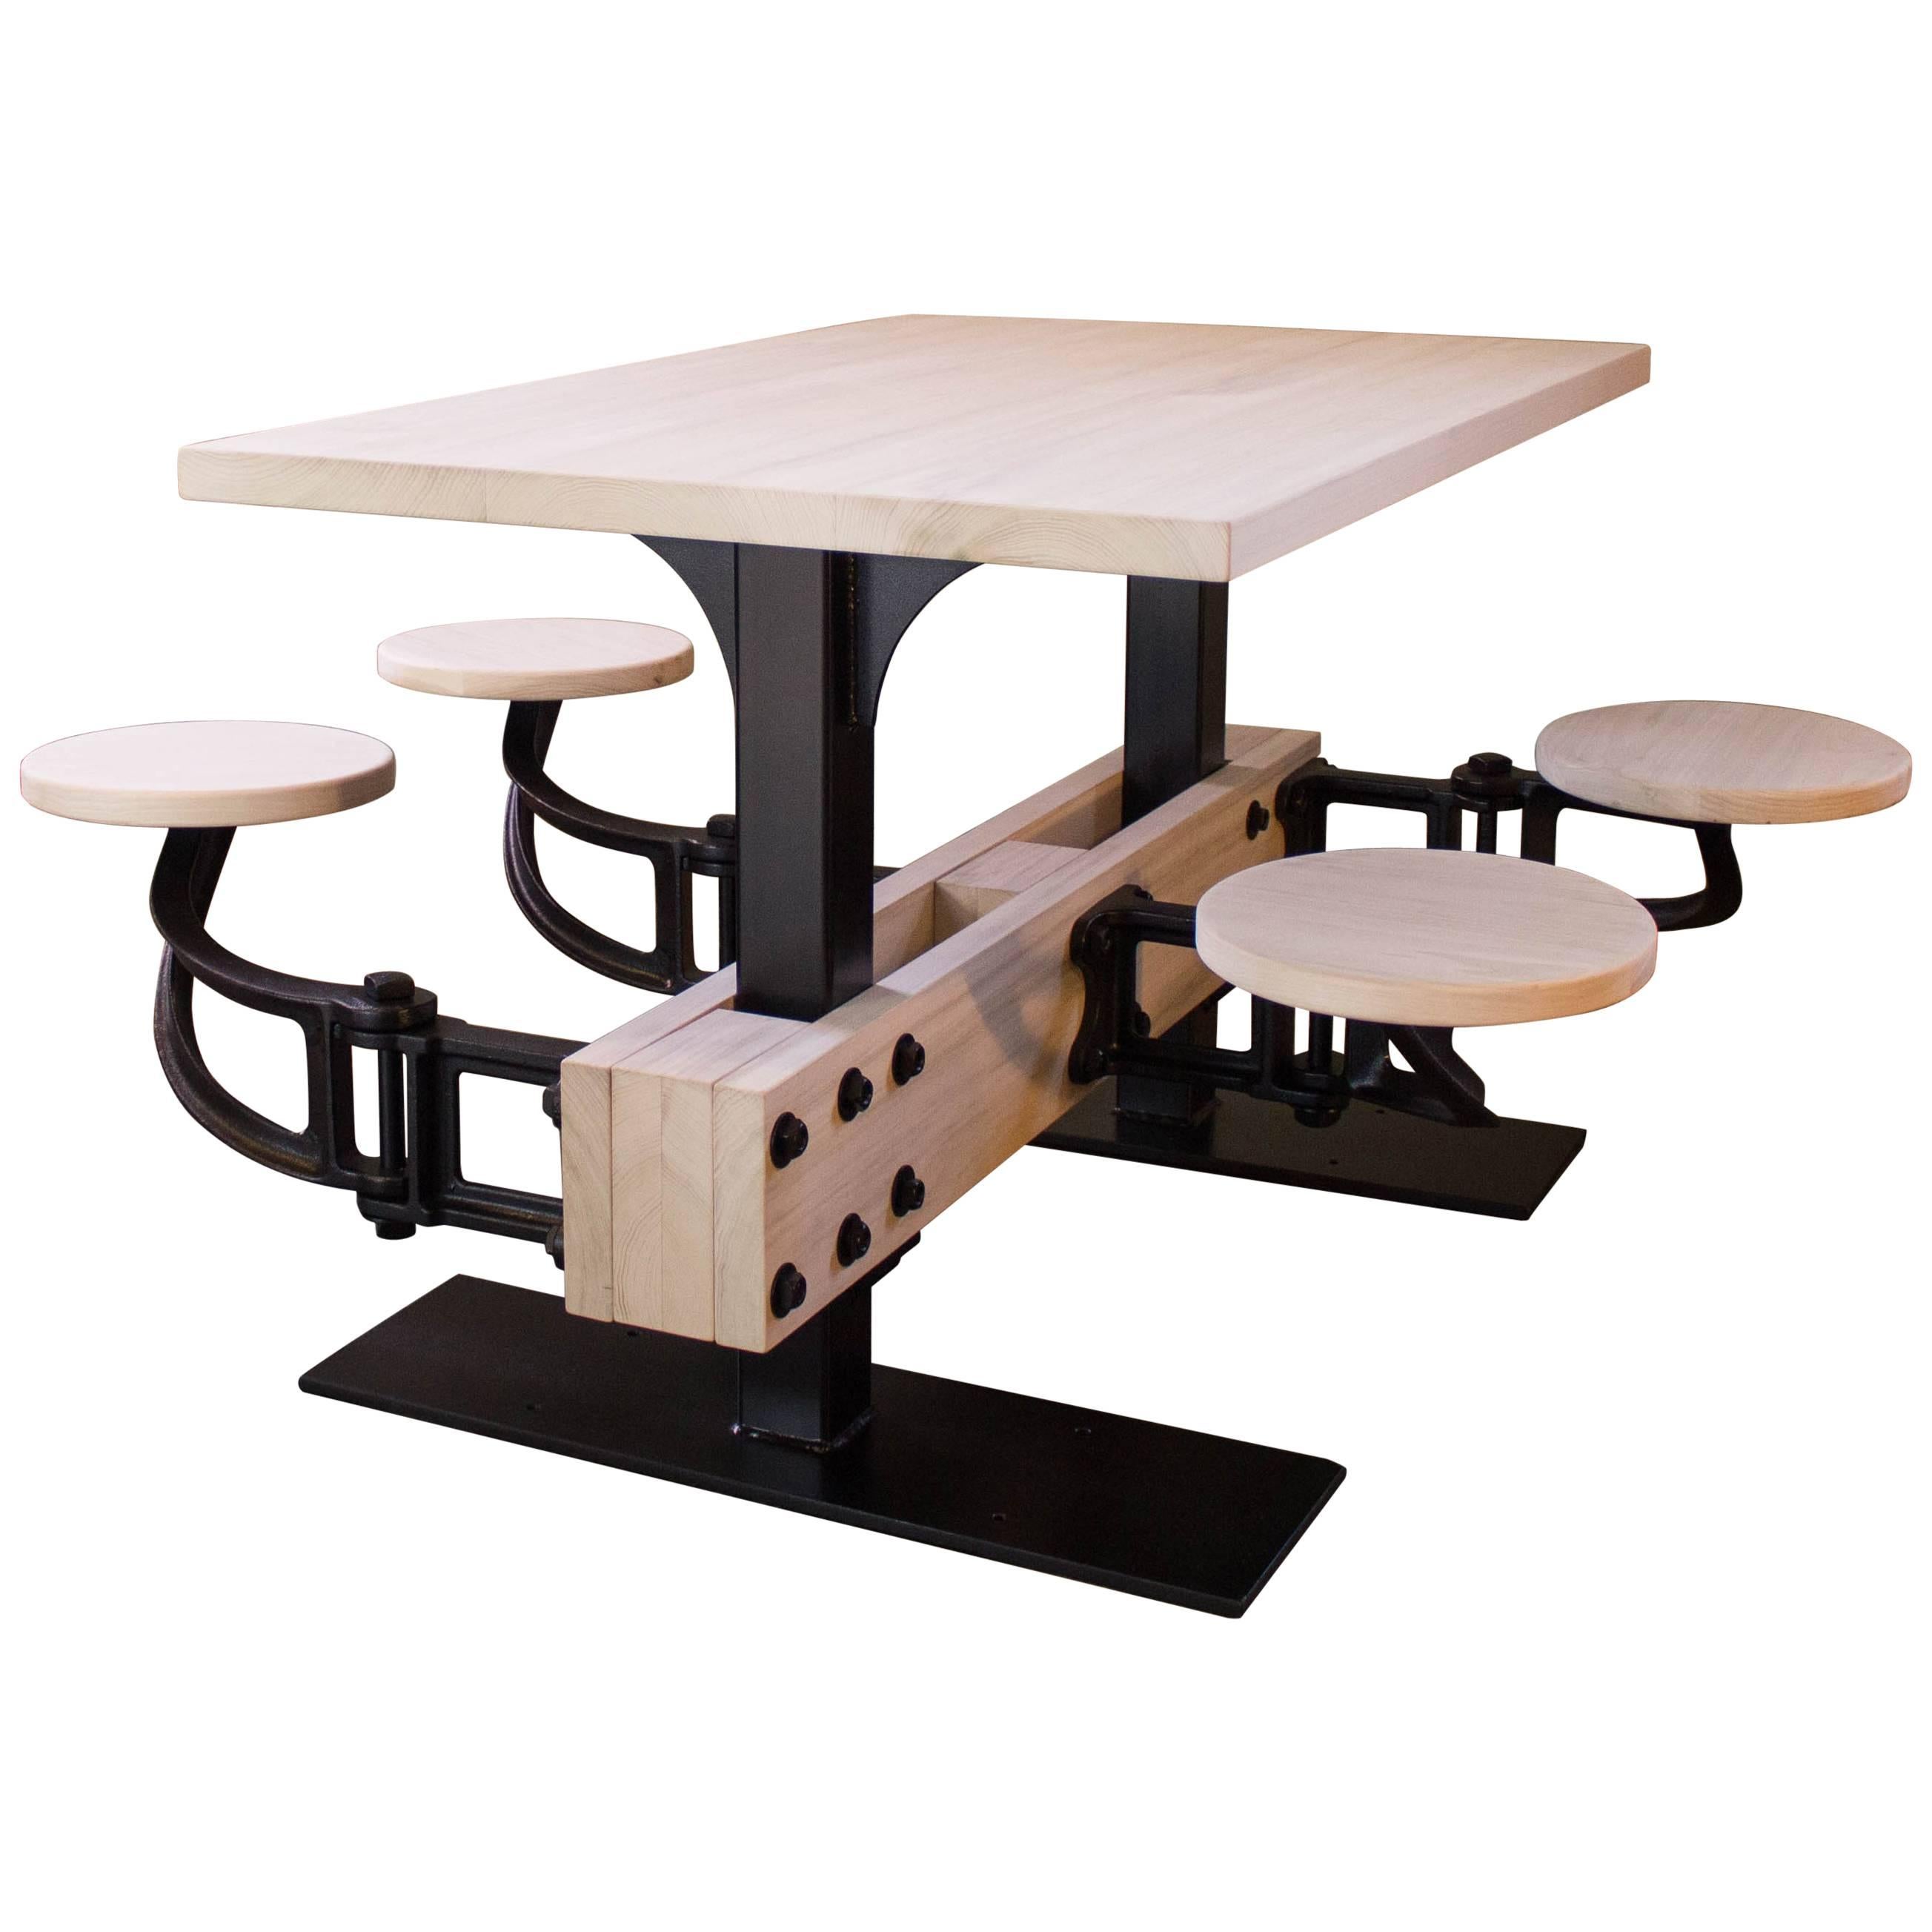 Table de salle à manger sur mesure avec sièges intégrés - Salle à manger de cuisine, salle à manger, fer et bois 